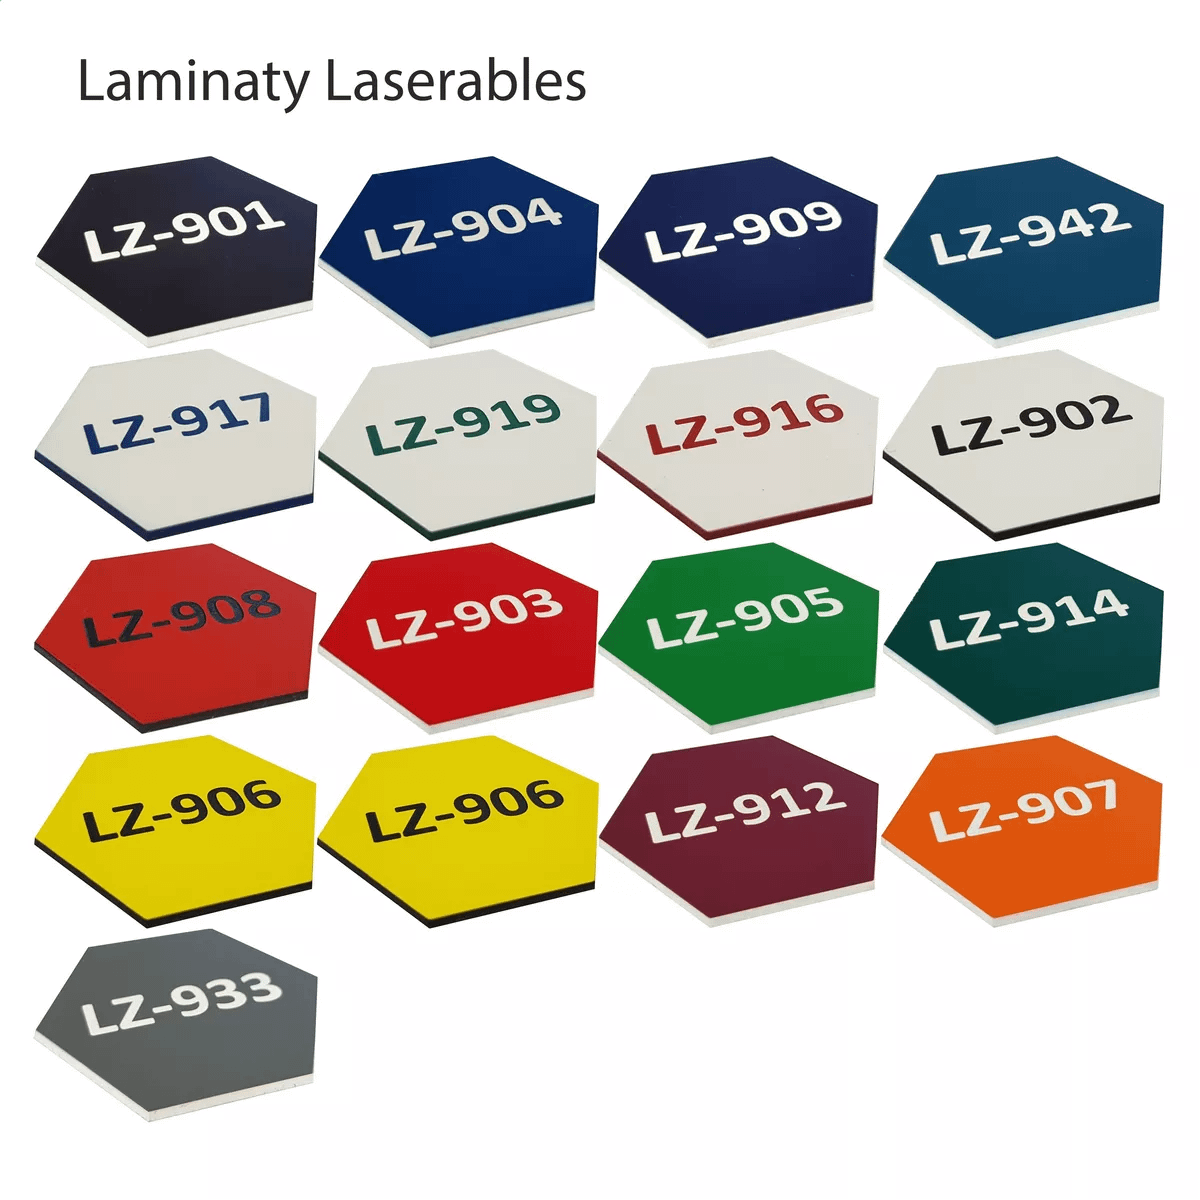 Laminaty Laserables_webp